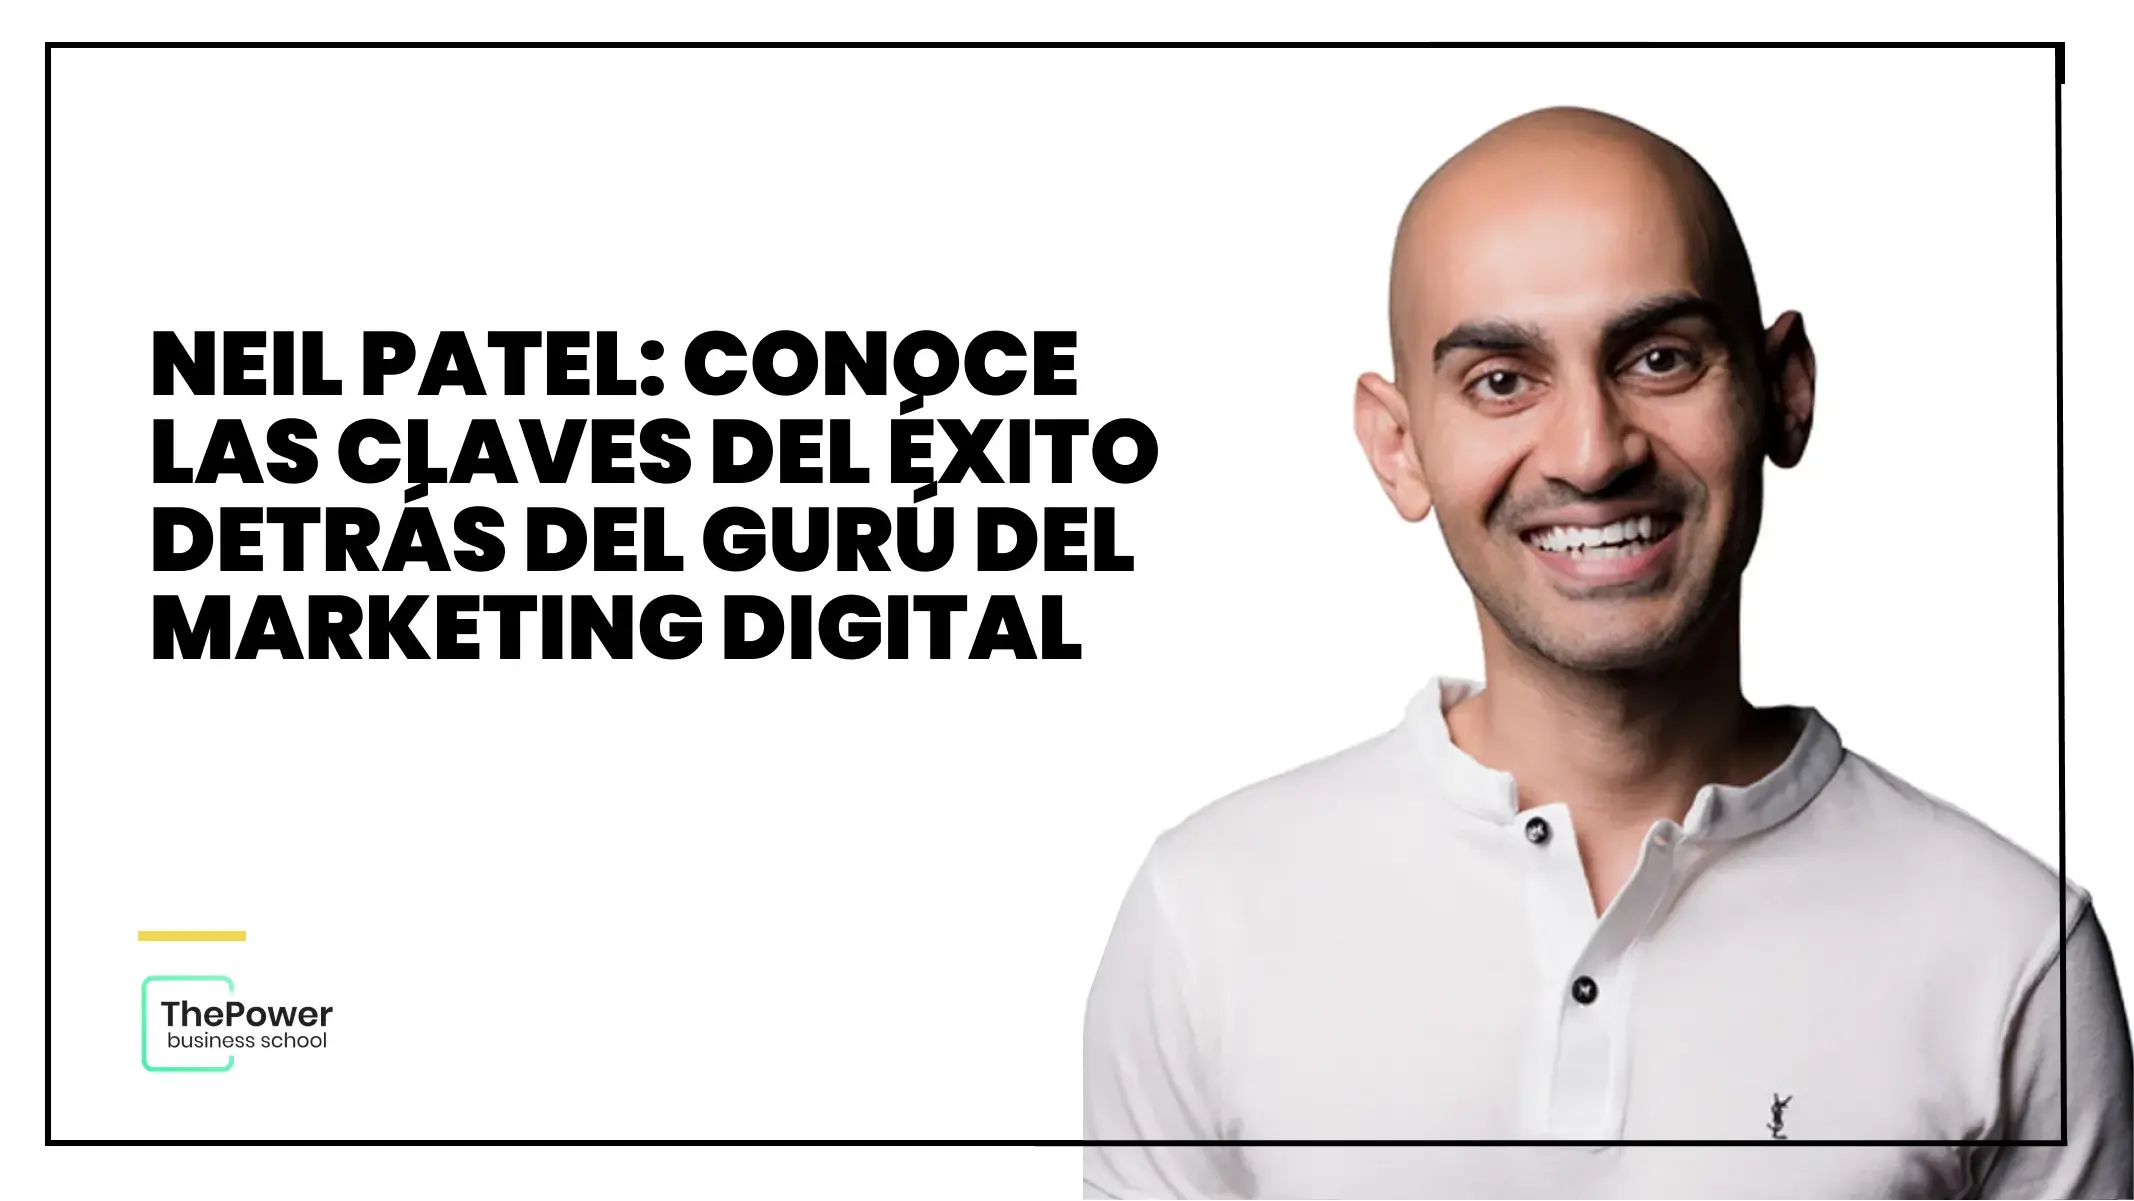 Neil Patel: Conoce las claves del éxito detrás del gurú del marketing digital